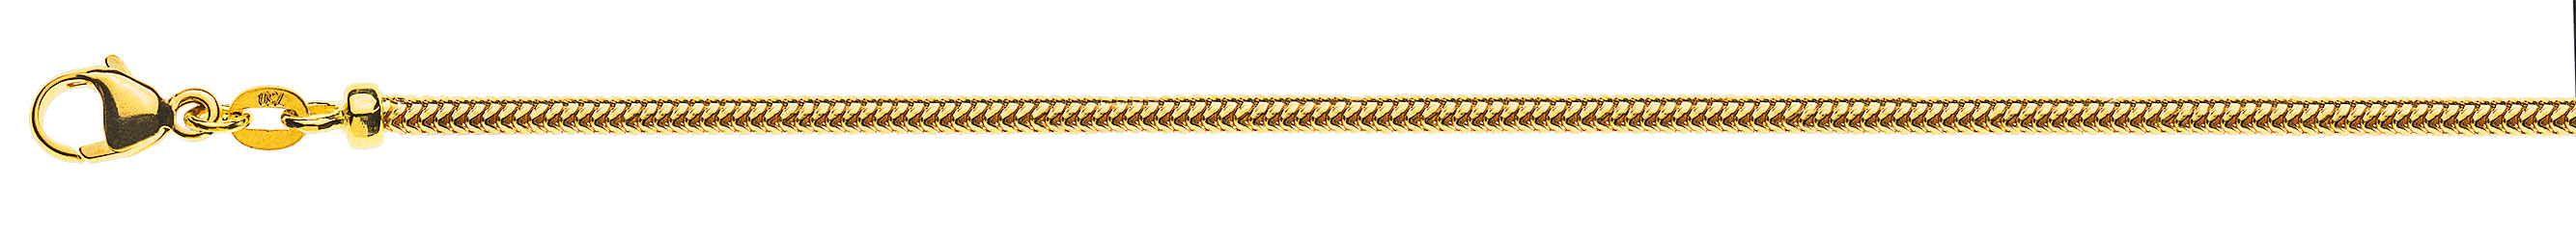 AURONOS Prestige Halskette Gelbgold 18K Schlangenkette 42cm 2.4mm